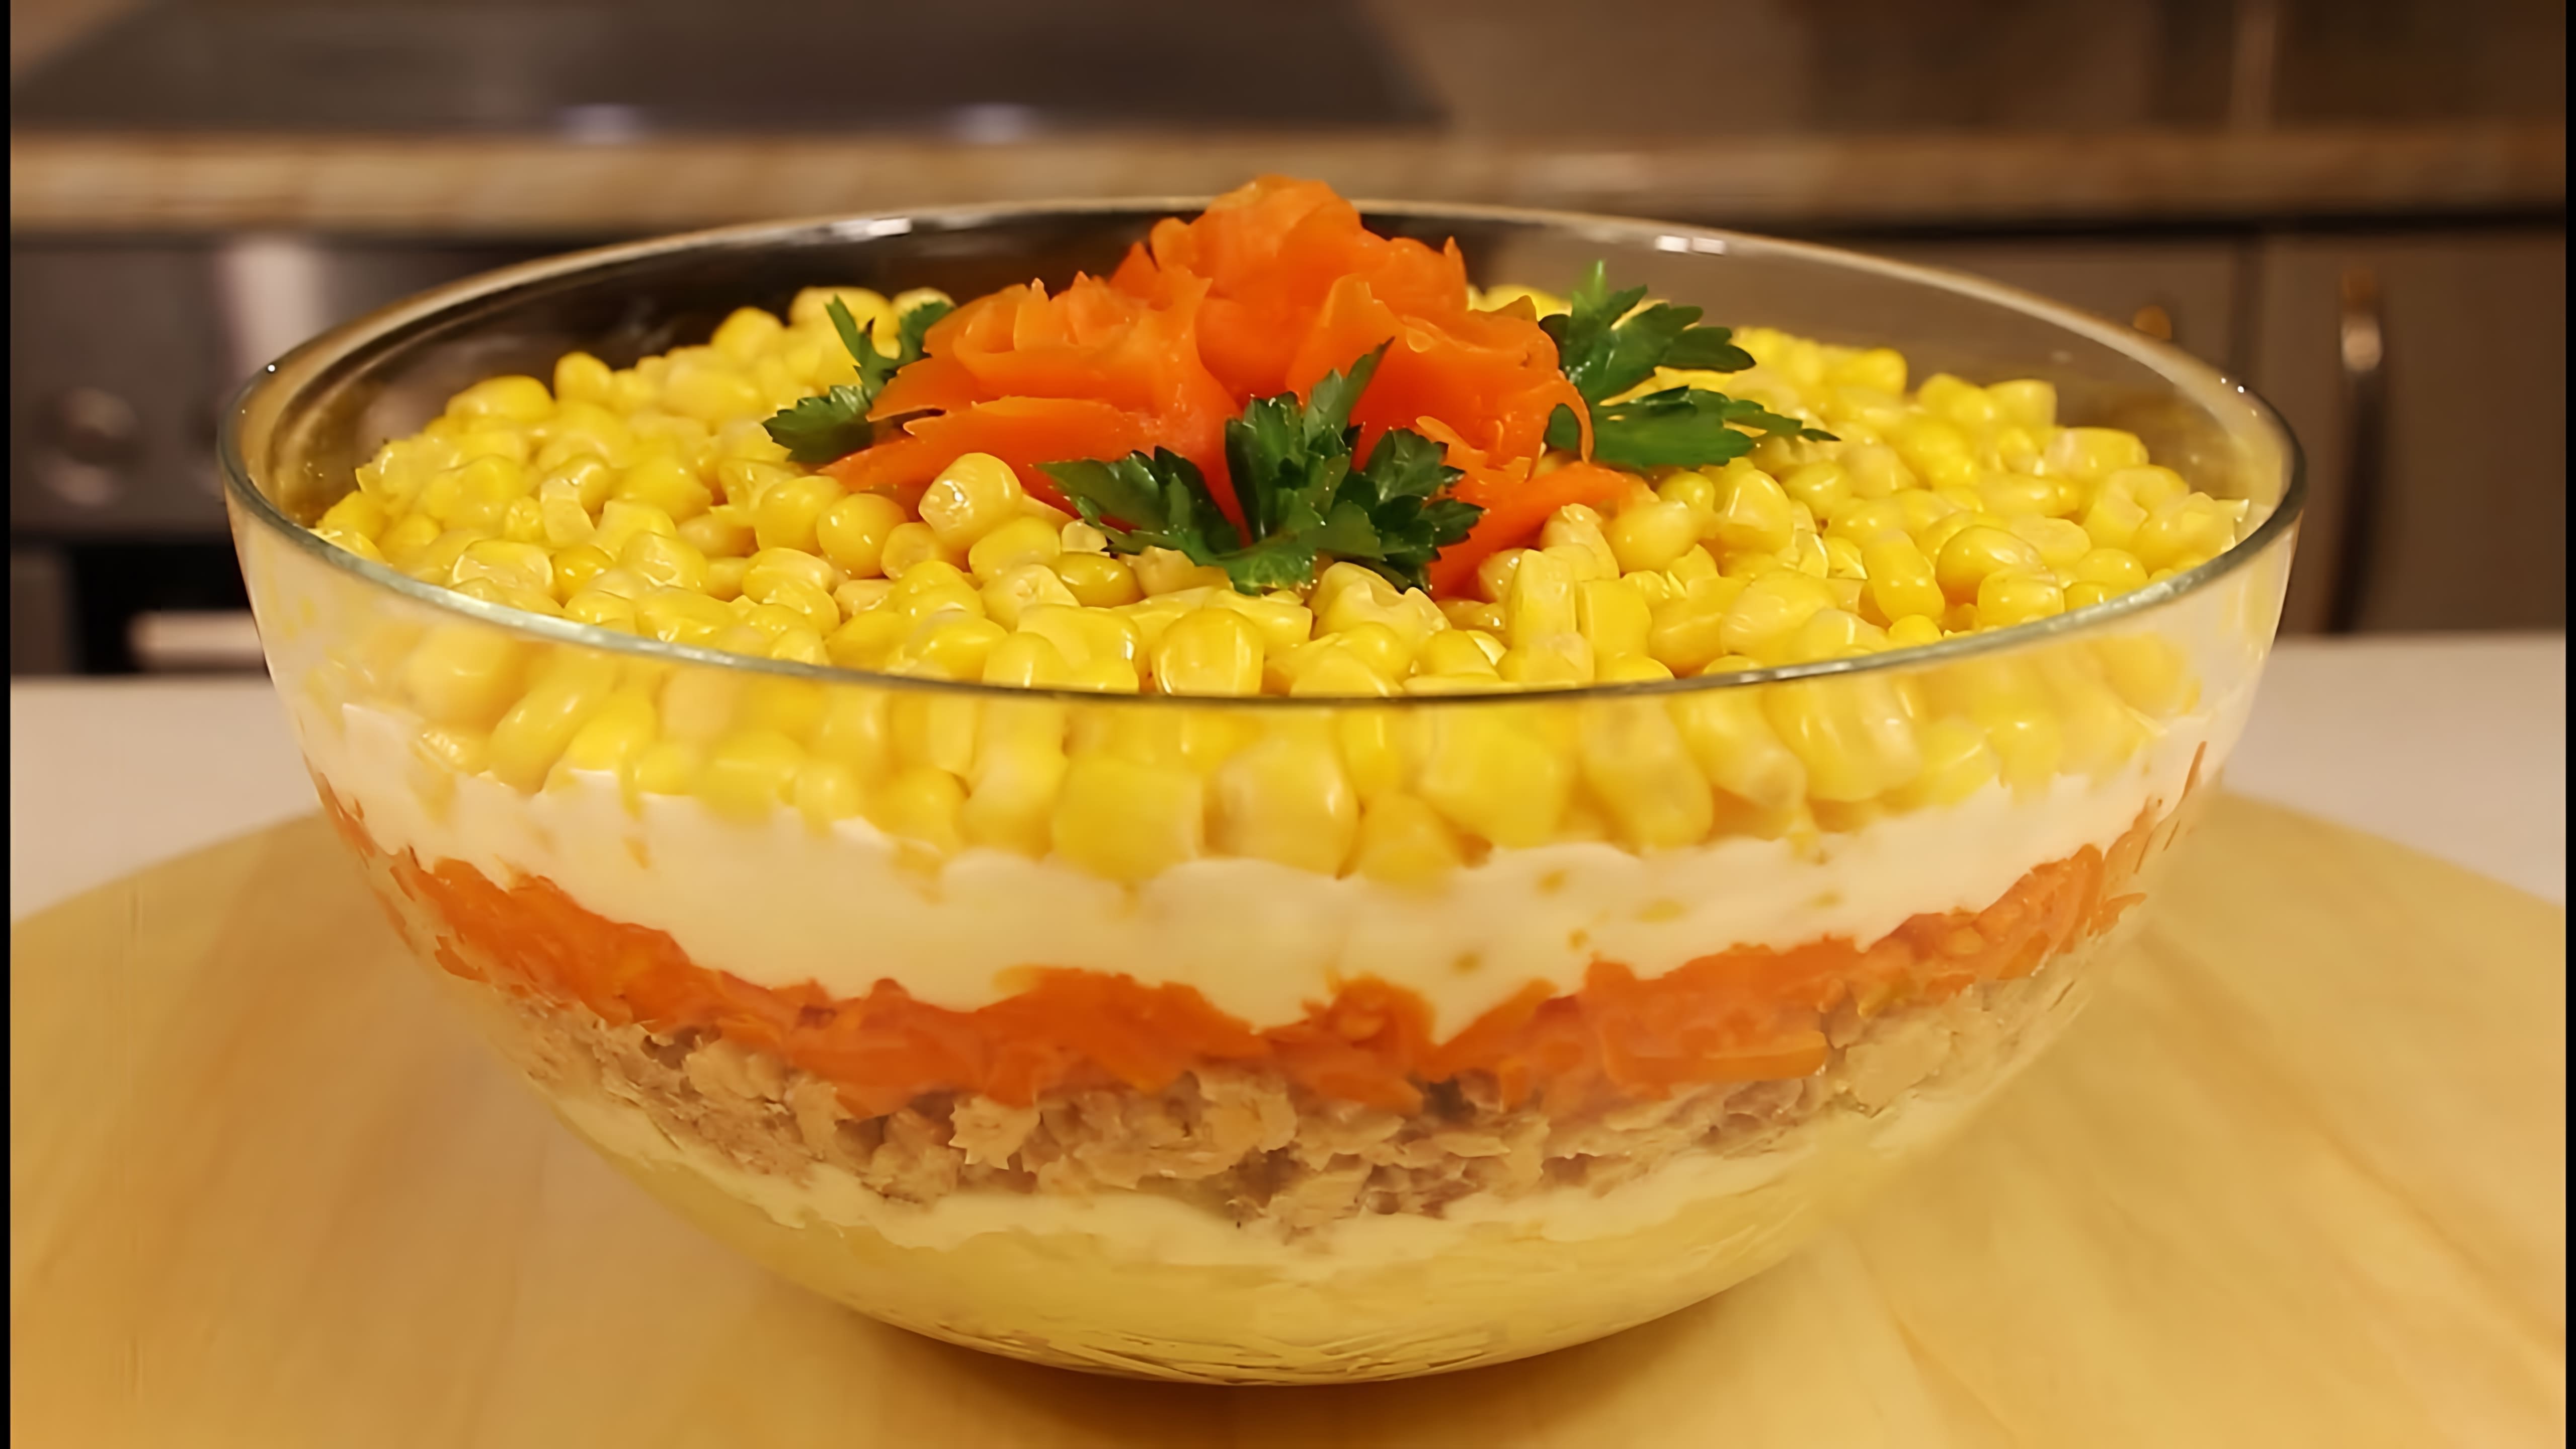 В этом видео демонстрируется процесс приготовления постного салата "Мимоза" с кукурузой